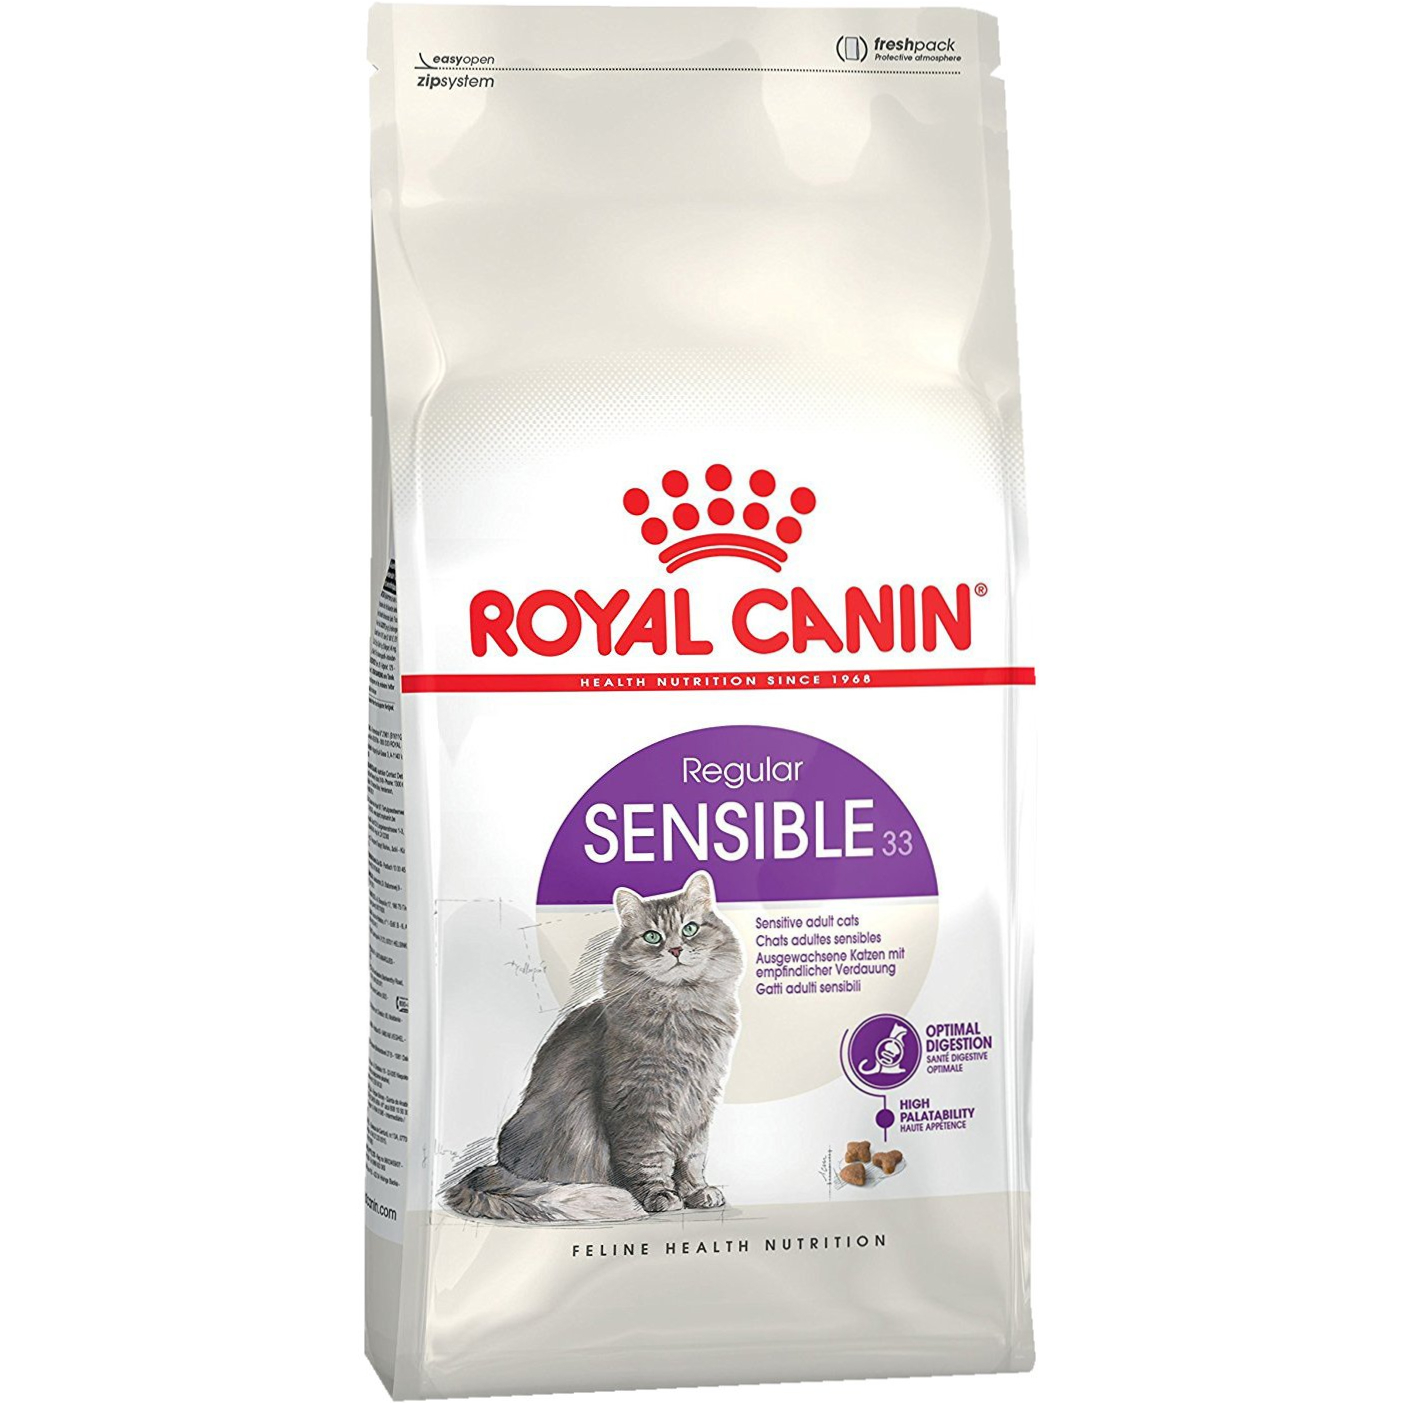 Корм для кошек Royal Canin Sensible 33 с чувствительным пищеварением 1,2 кг корм для кошек royal canin sensible 33 с чувствительной пищеварительной системой сух 400г